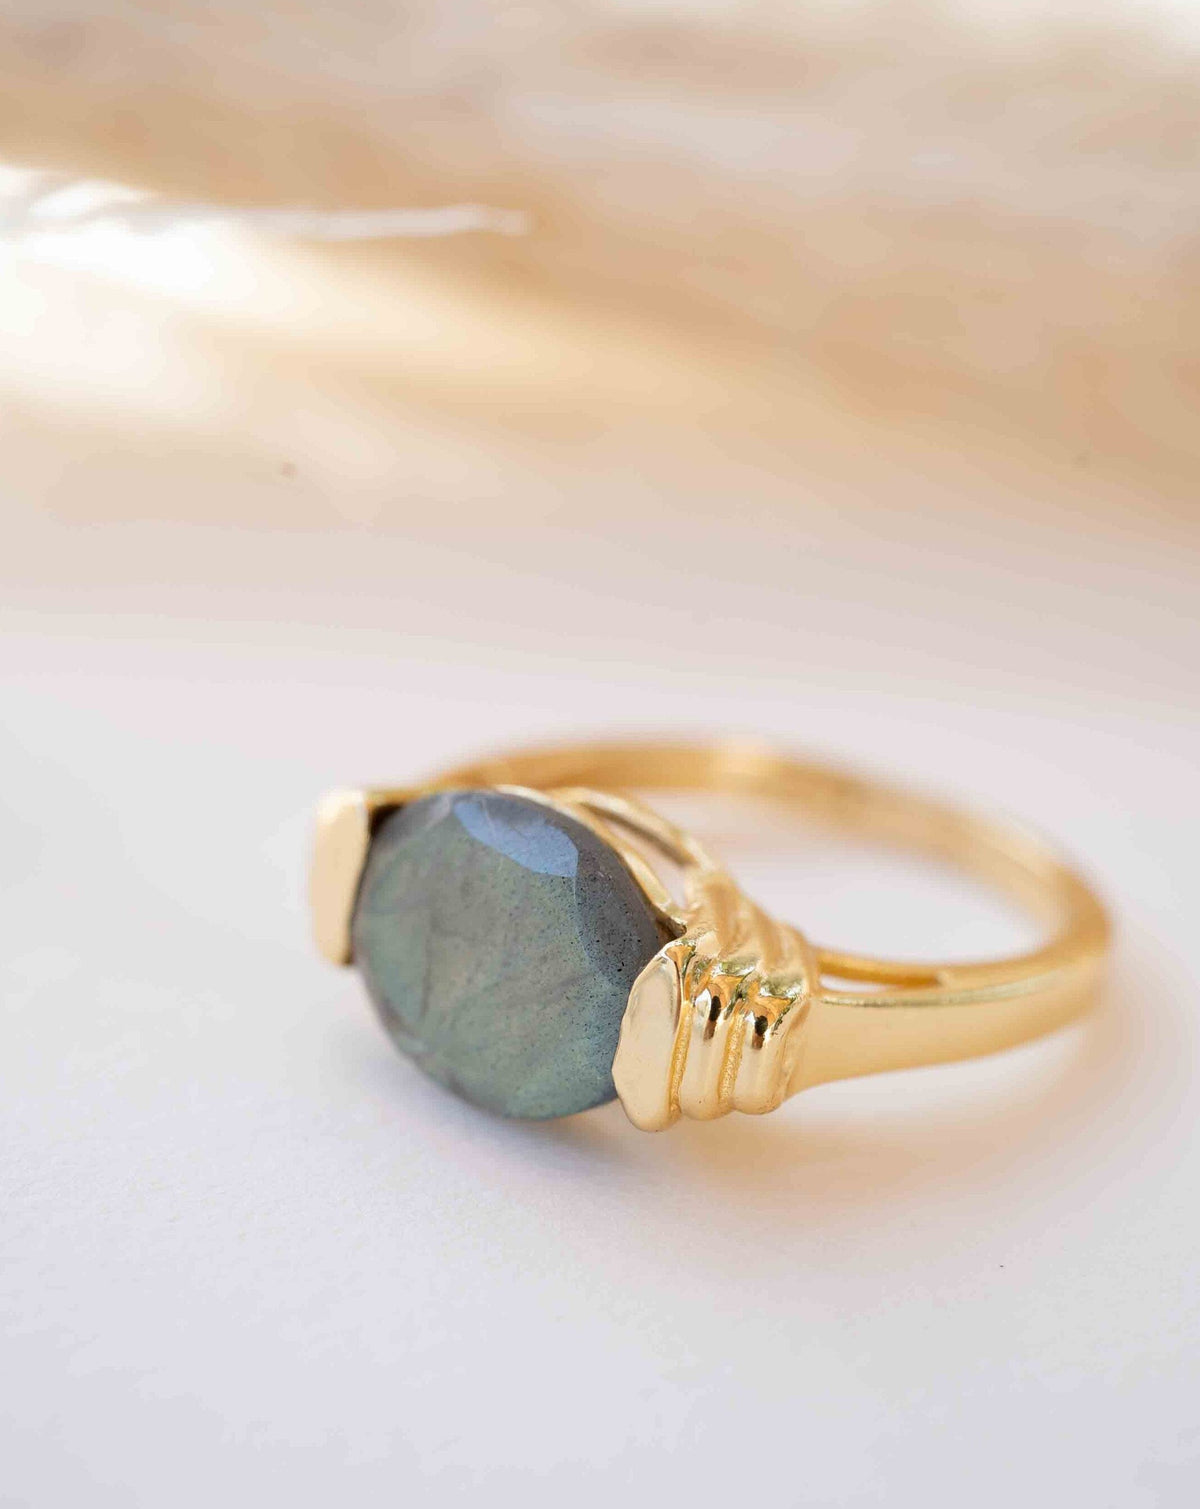 Labradorite Ring * Gold Plated Ring * Statement Ring *Gemstone Ring * Labradorite * Delicate Ring * Modern * BJR275